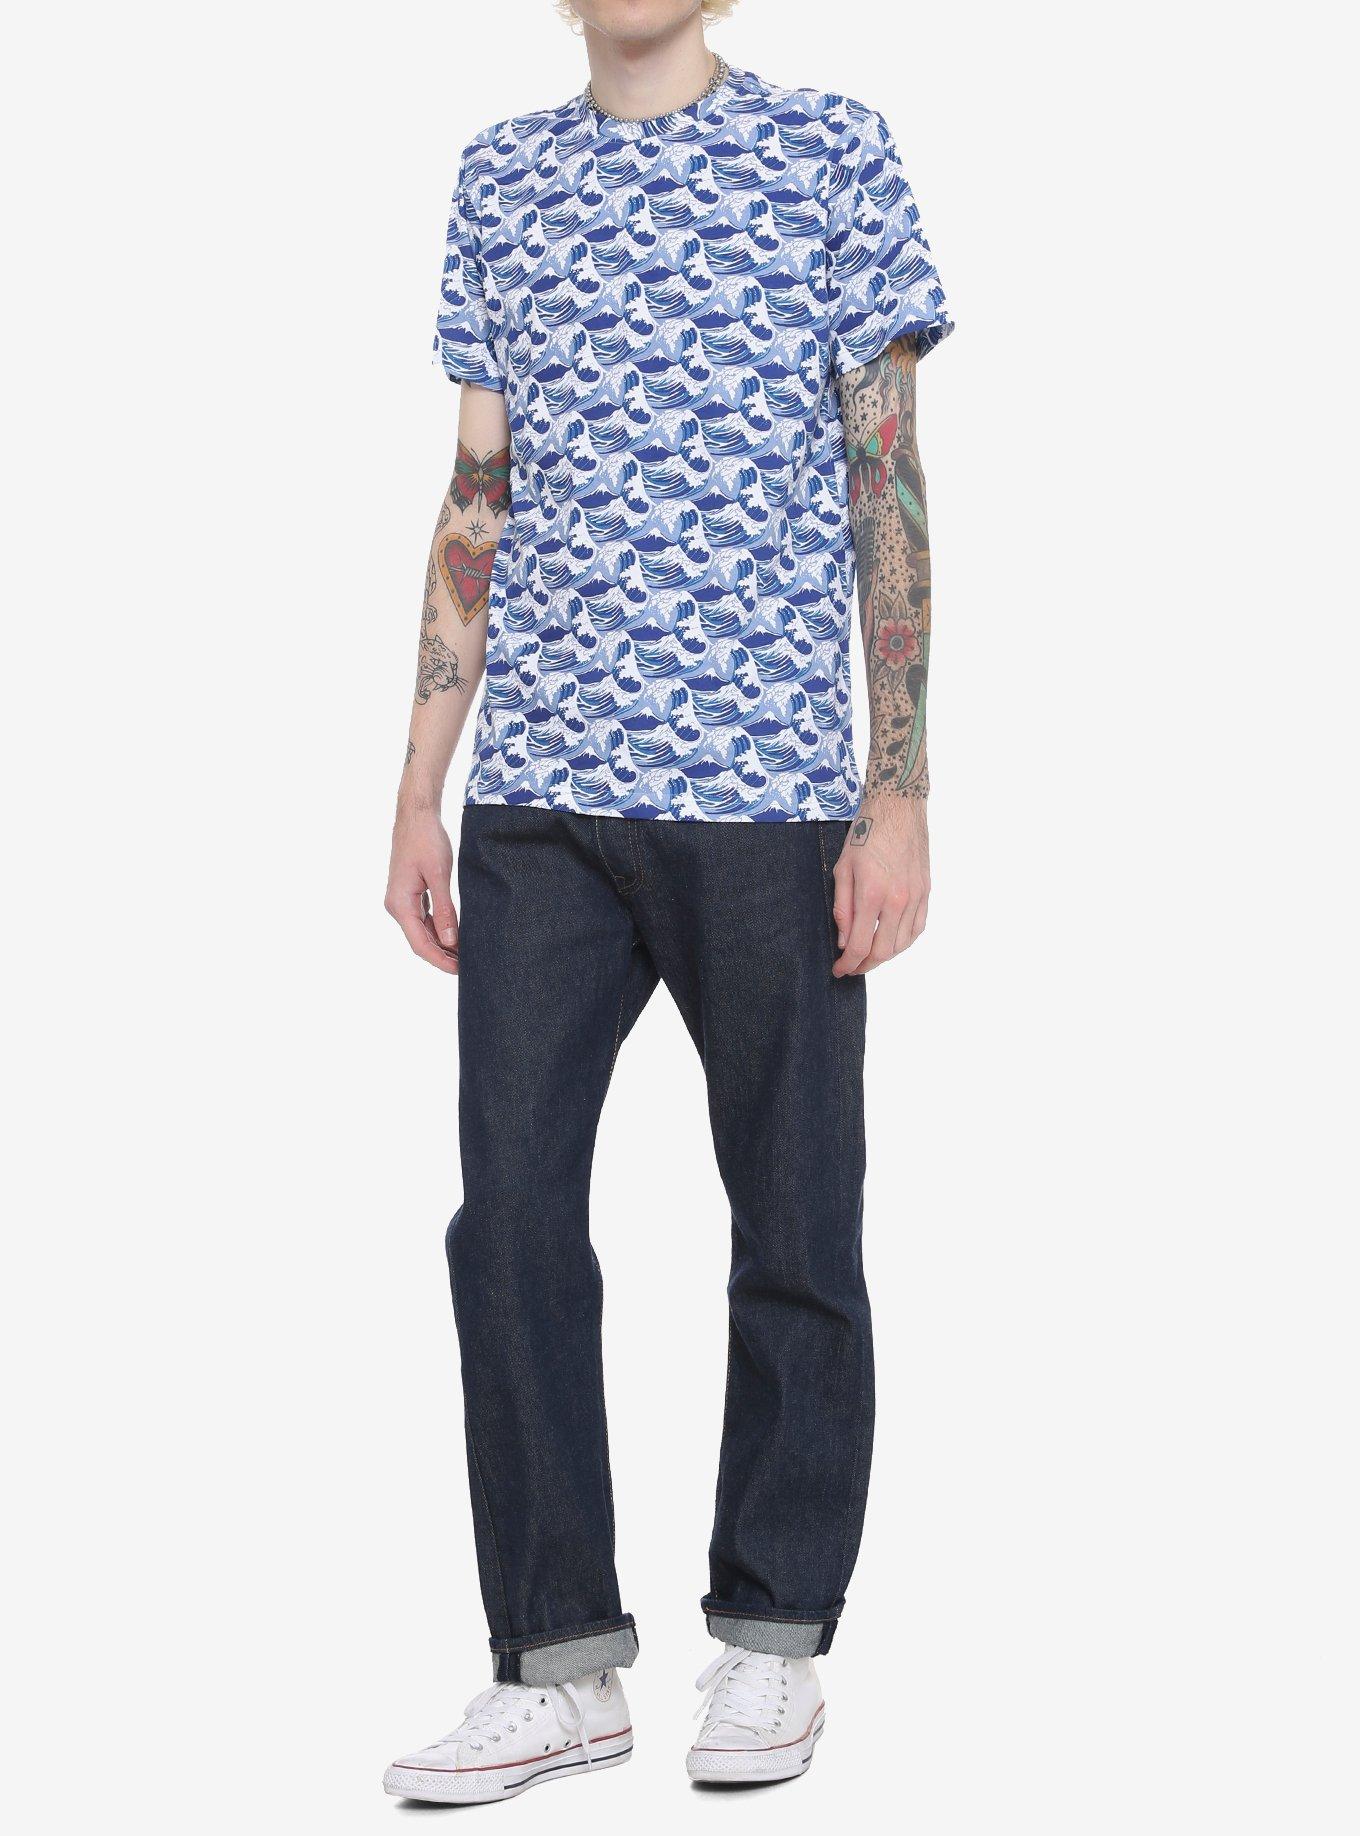 Blue Ocean Waves T-Shirt, BLUE, alternate